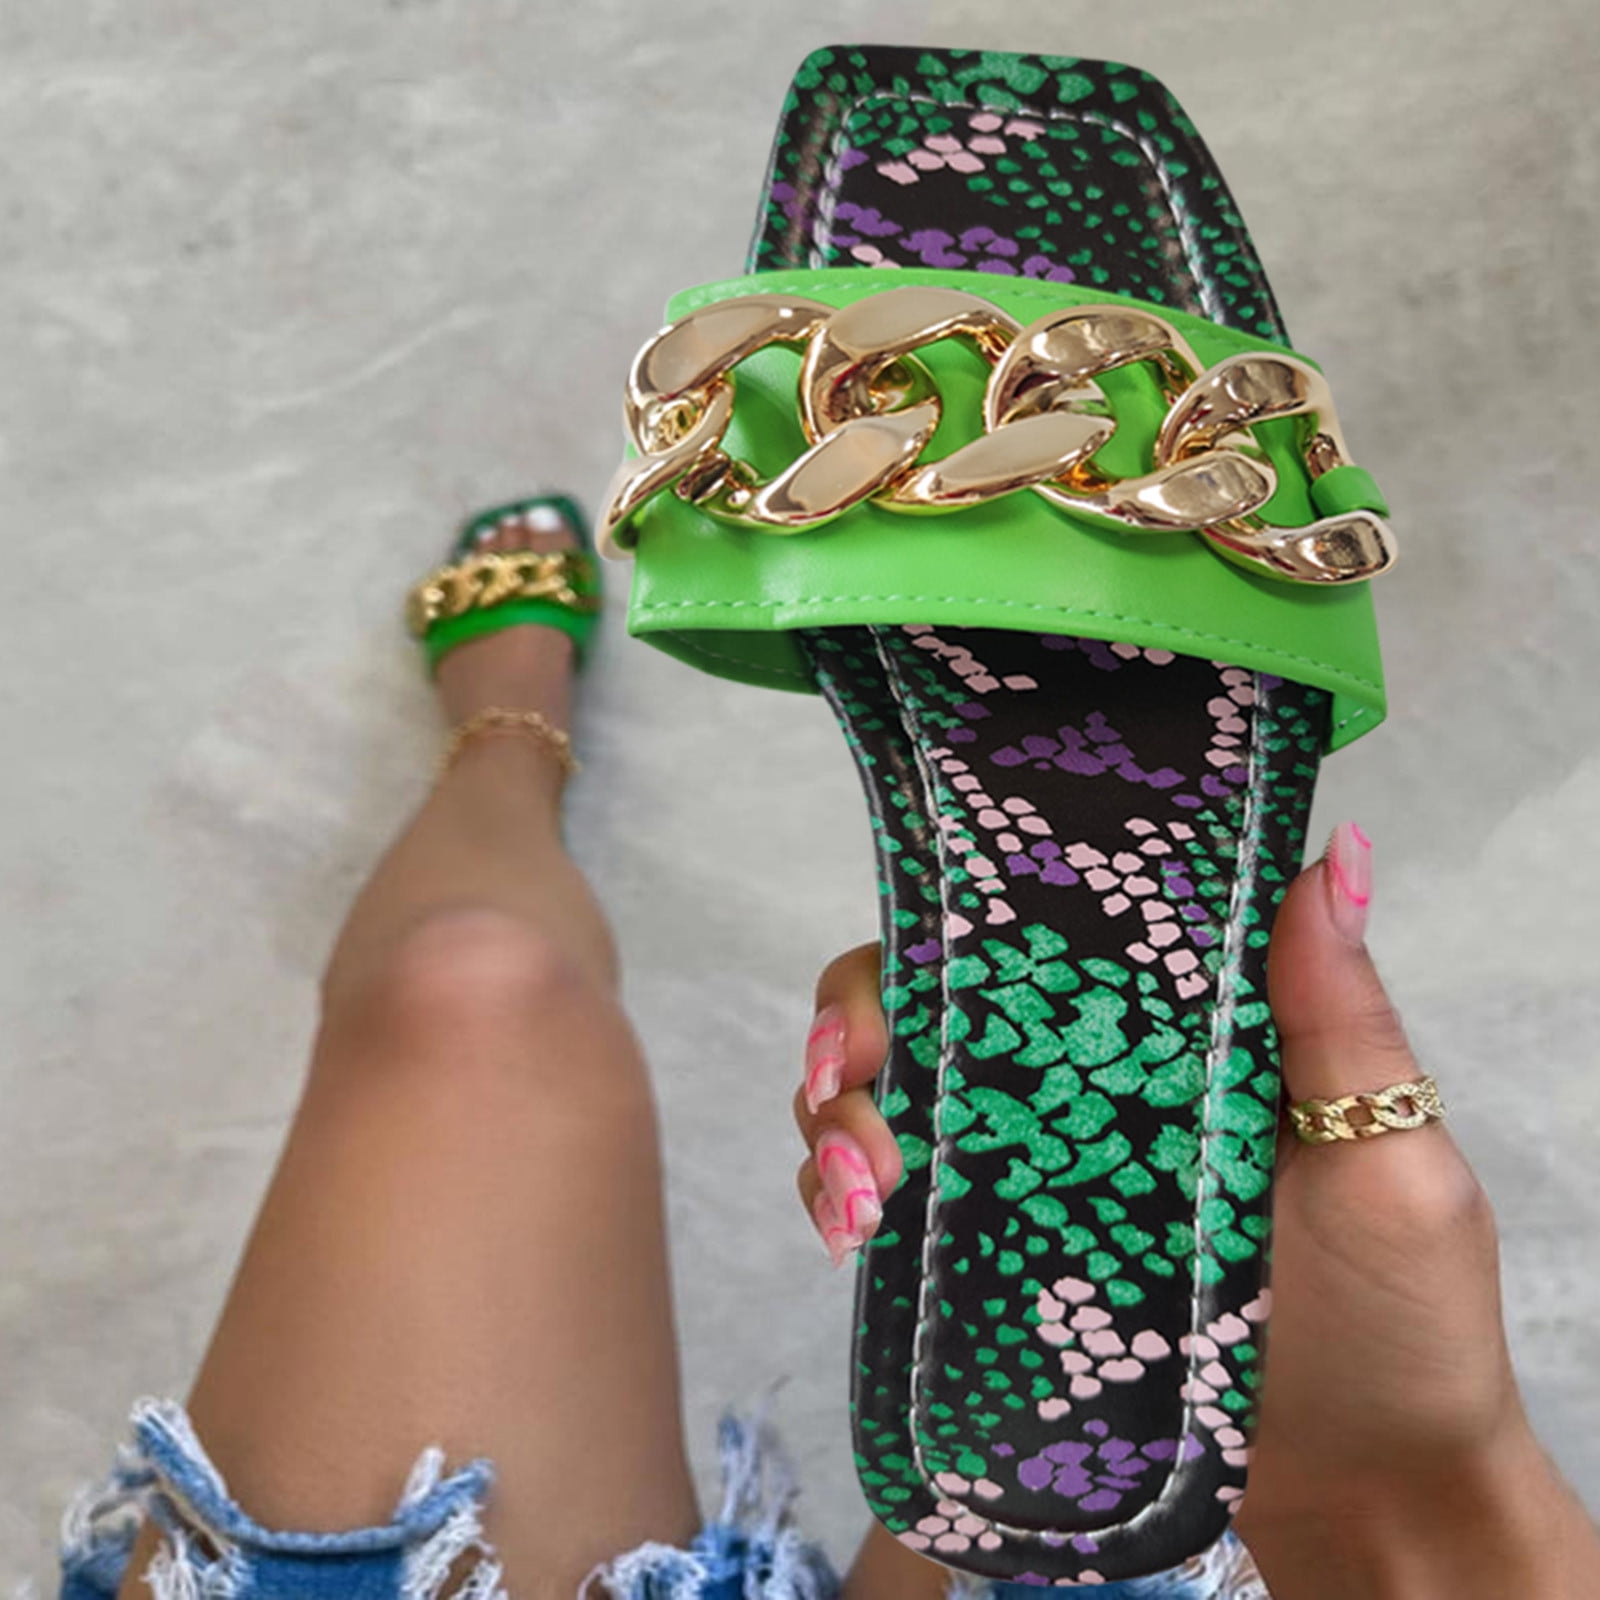 CAICJ98 Wedge Sandals for Women Summer Beach Sandals For Women ...